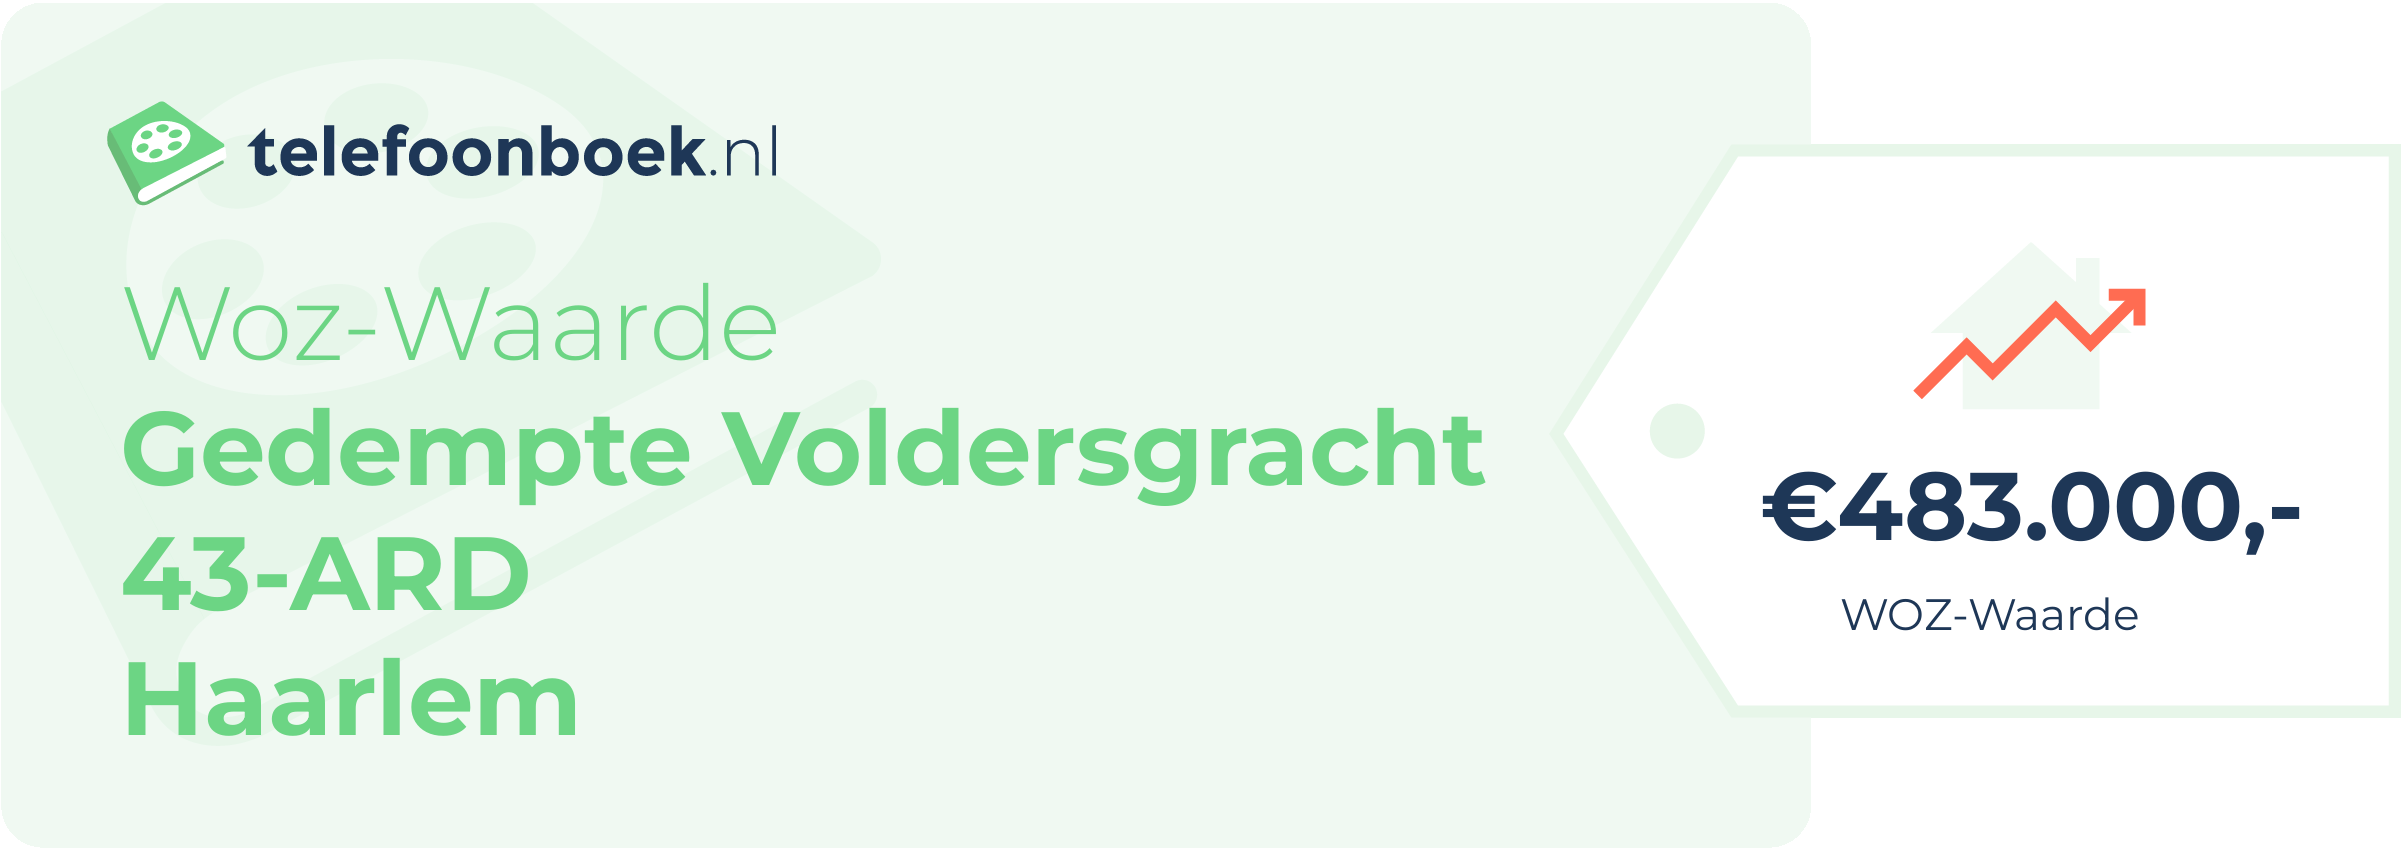 WOZ-waarde Gedempte Voldersgracht 43-ARD Haarlem